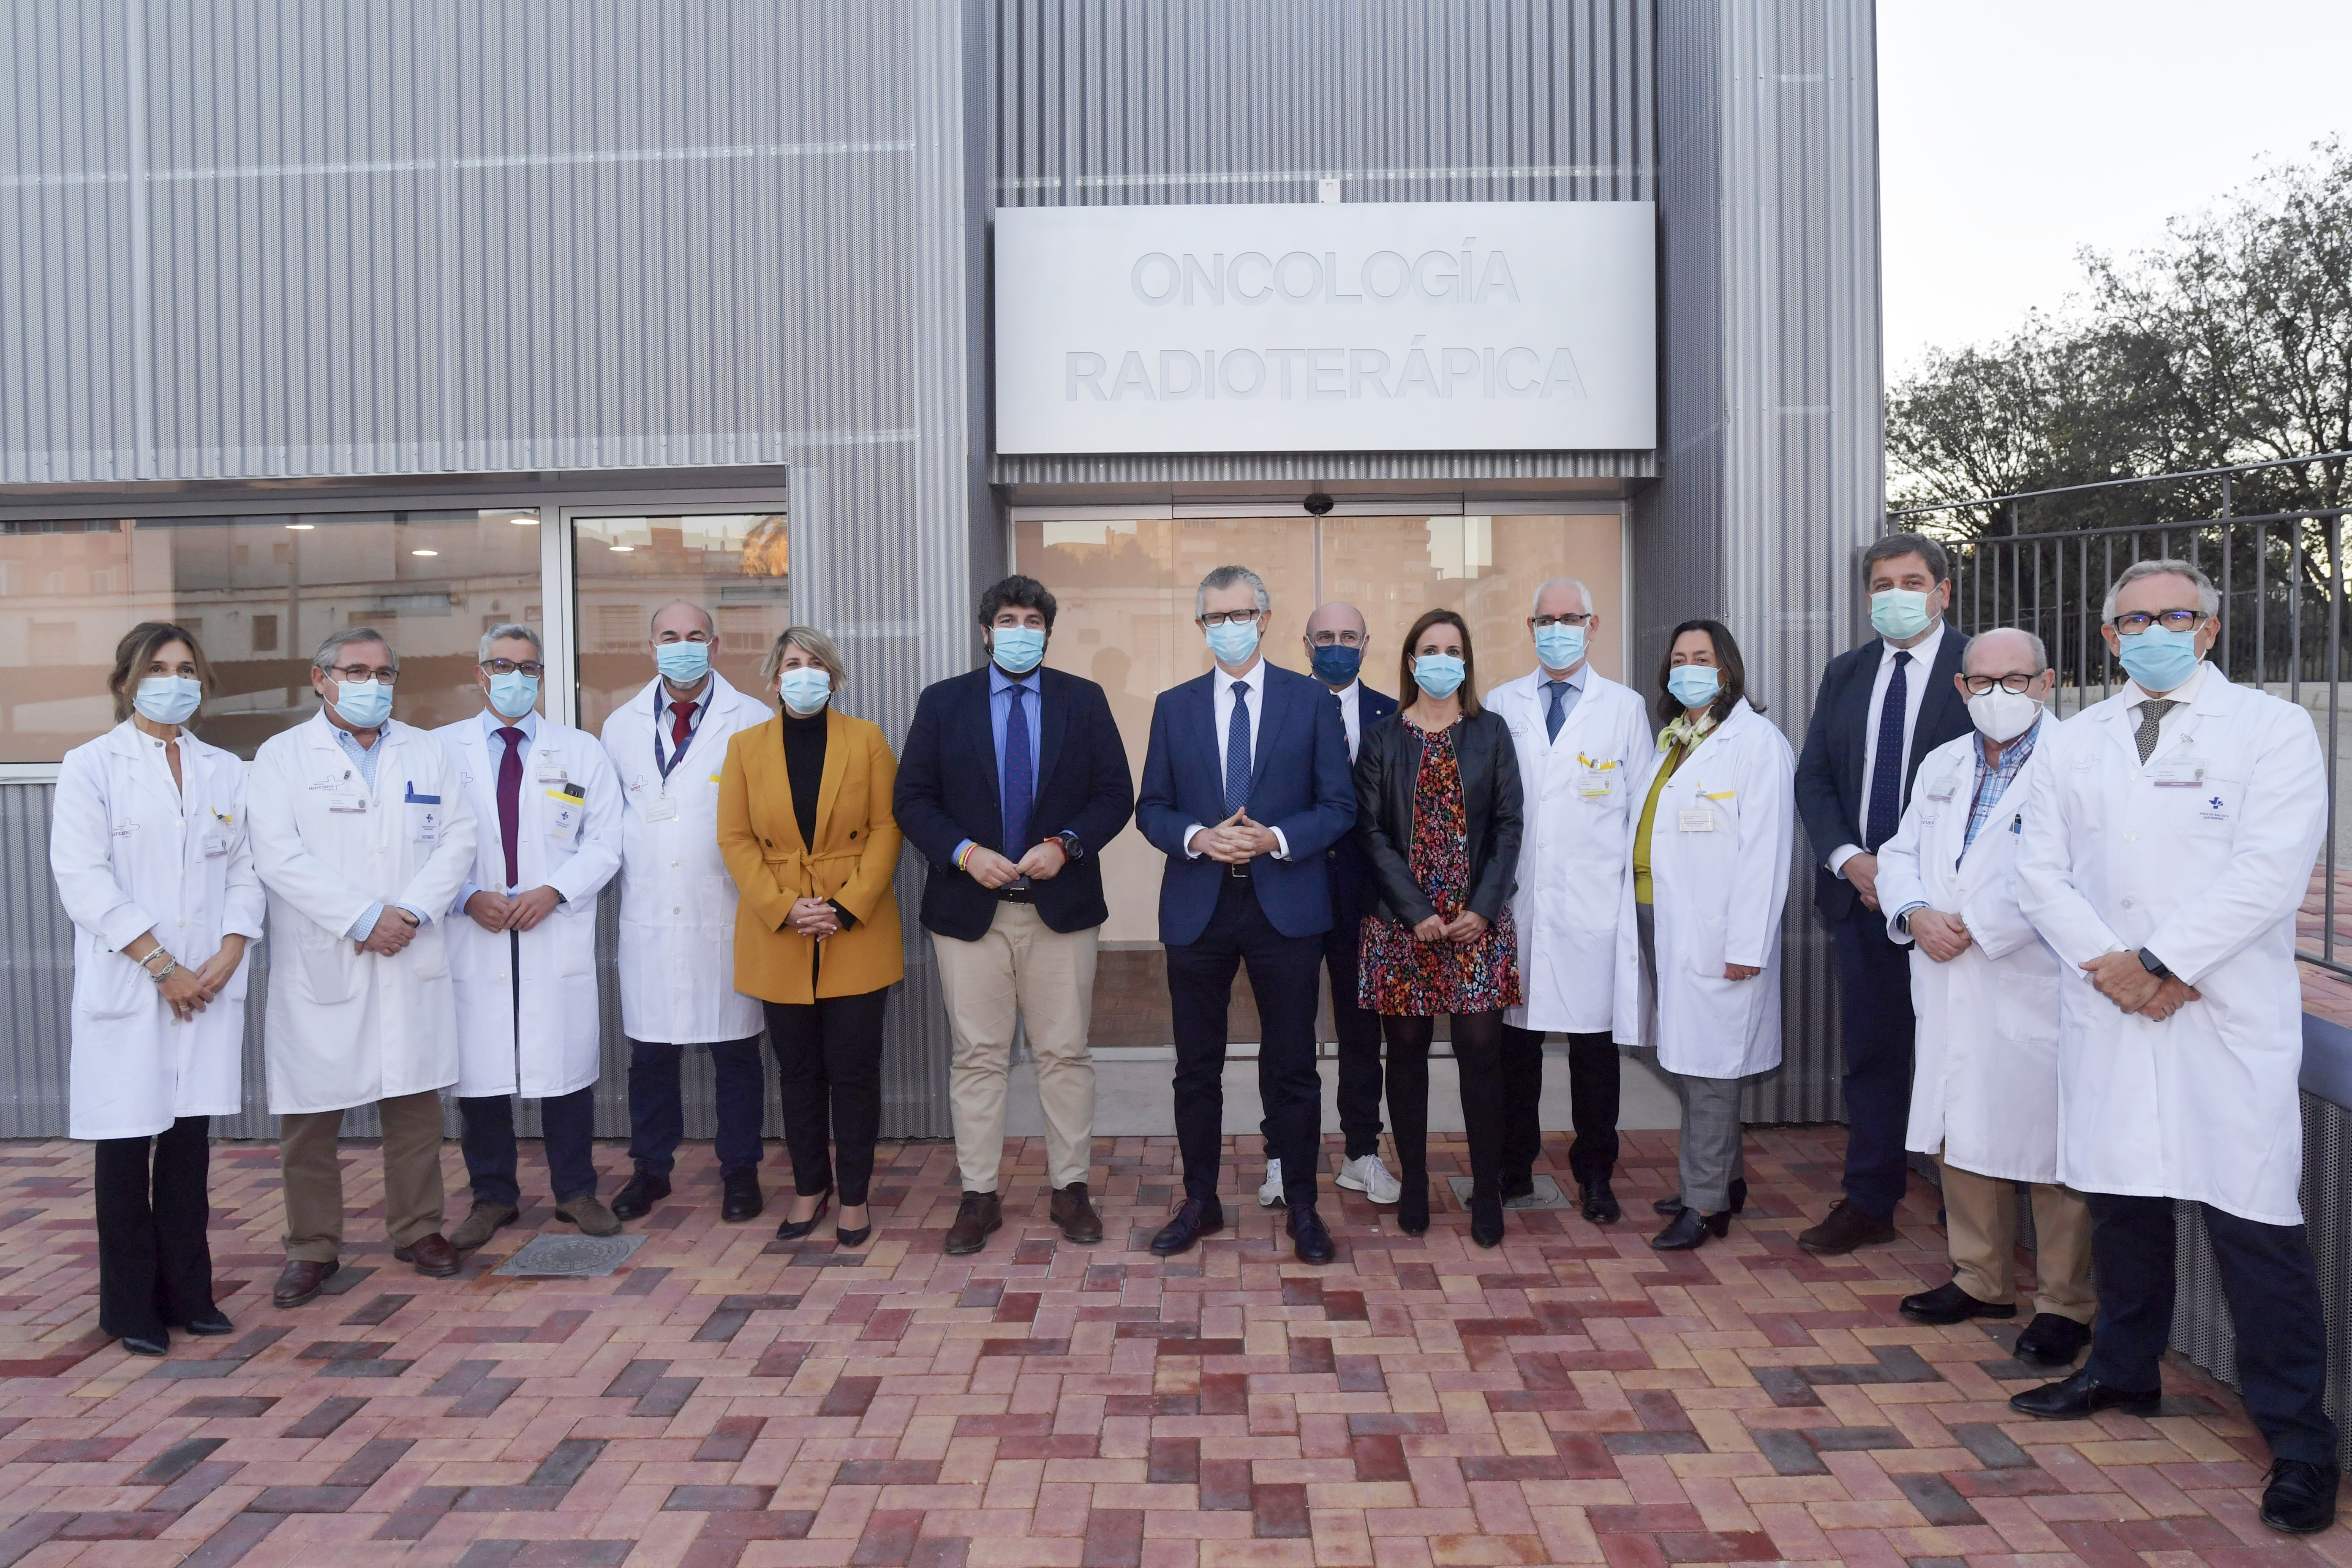 El presidente de la Comunidad, Fernando López Miras, visitó esta tarde el nuevo acelerador lineal del servicio de Oncología Radioterápica del hospital Virgen del Rosell